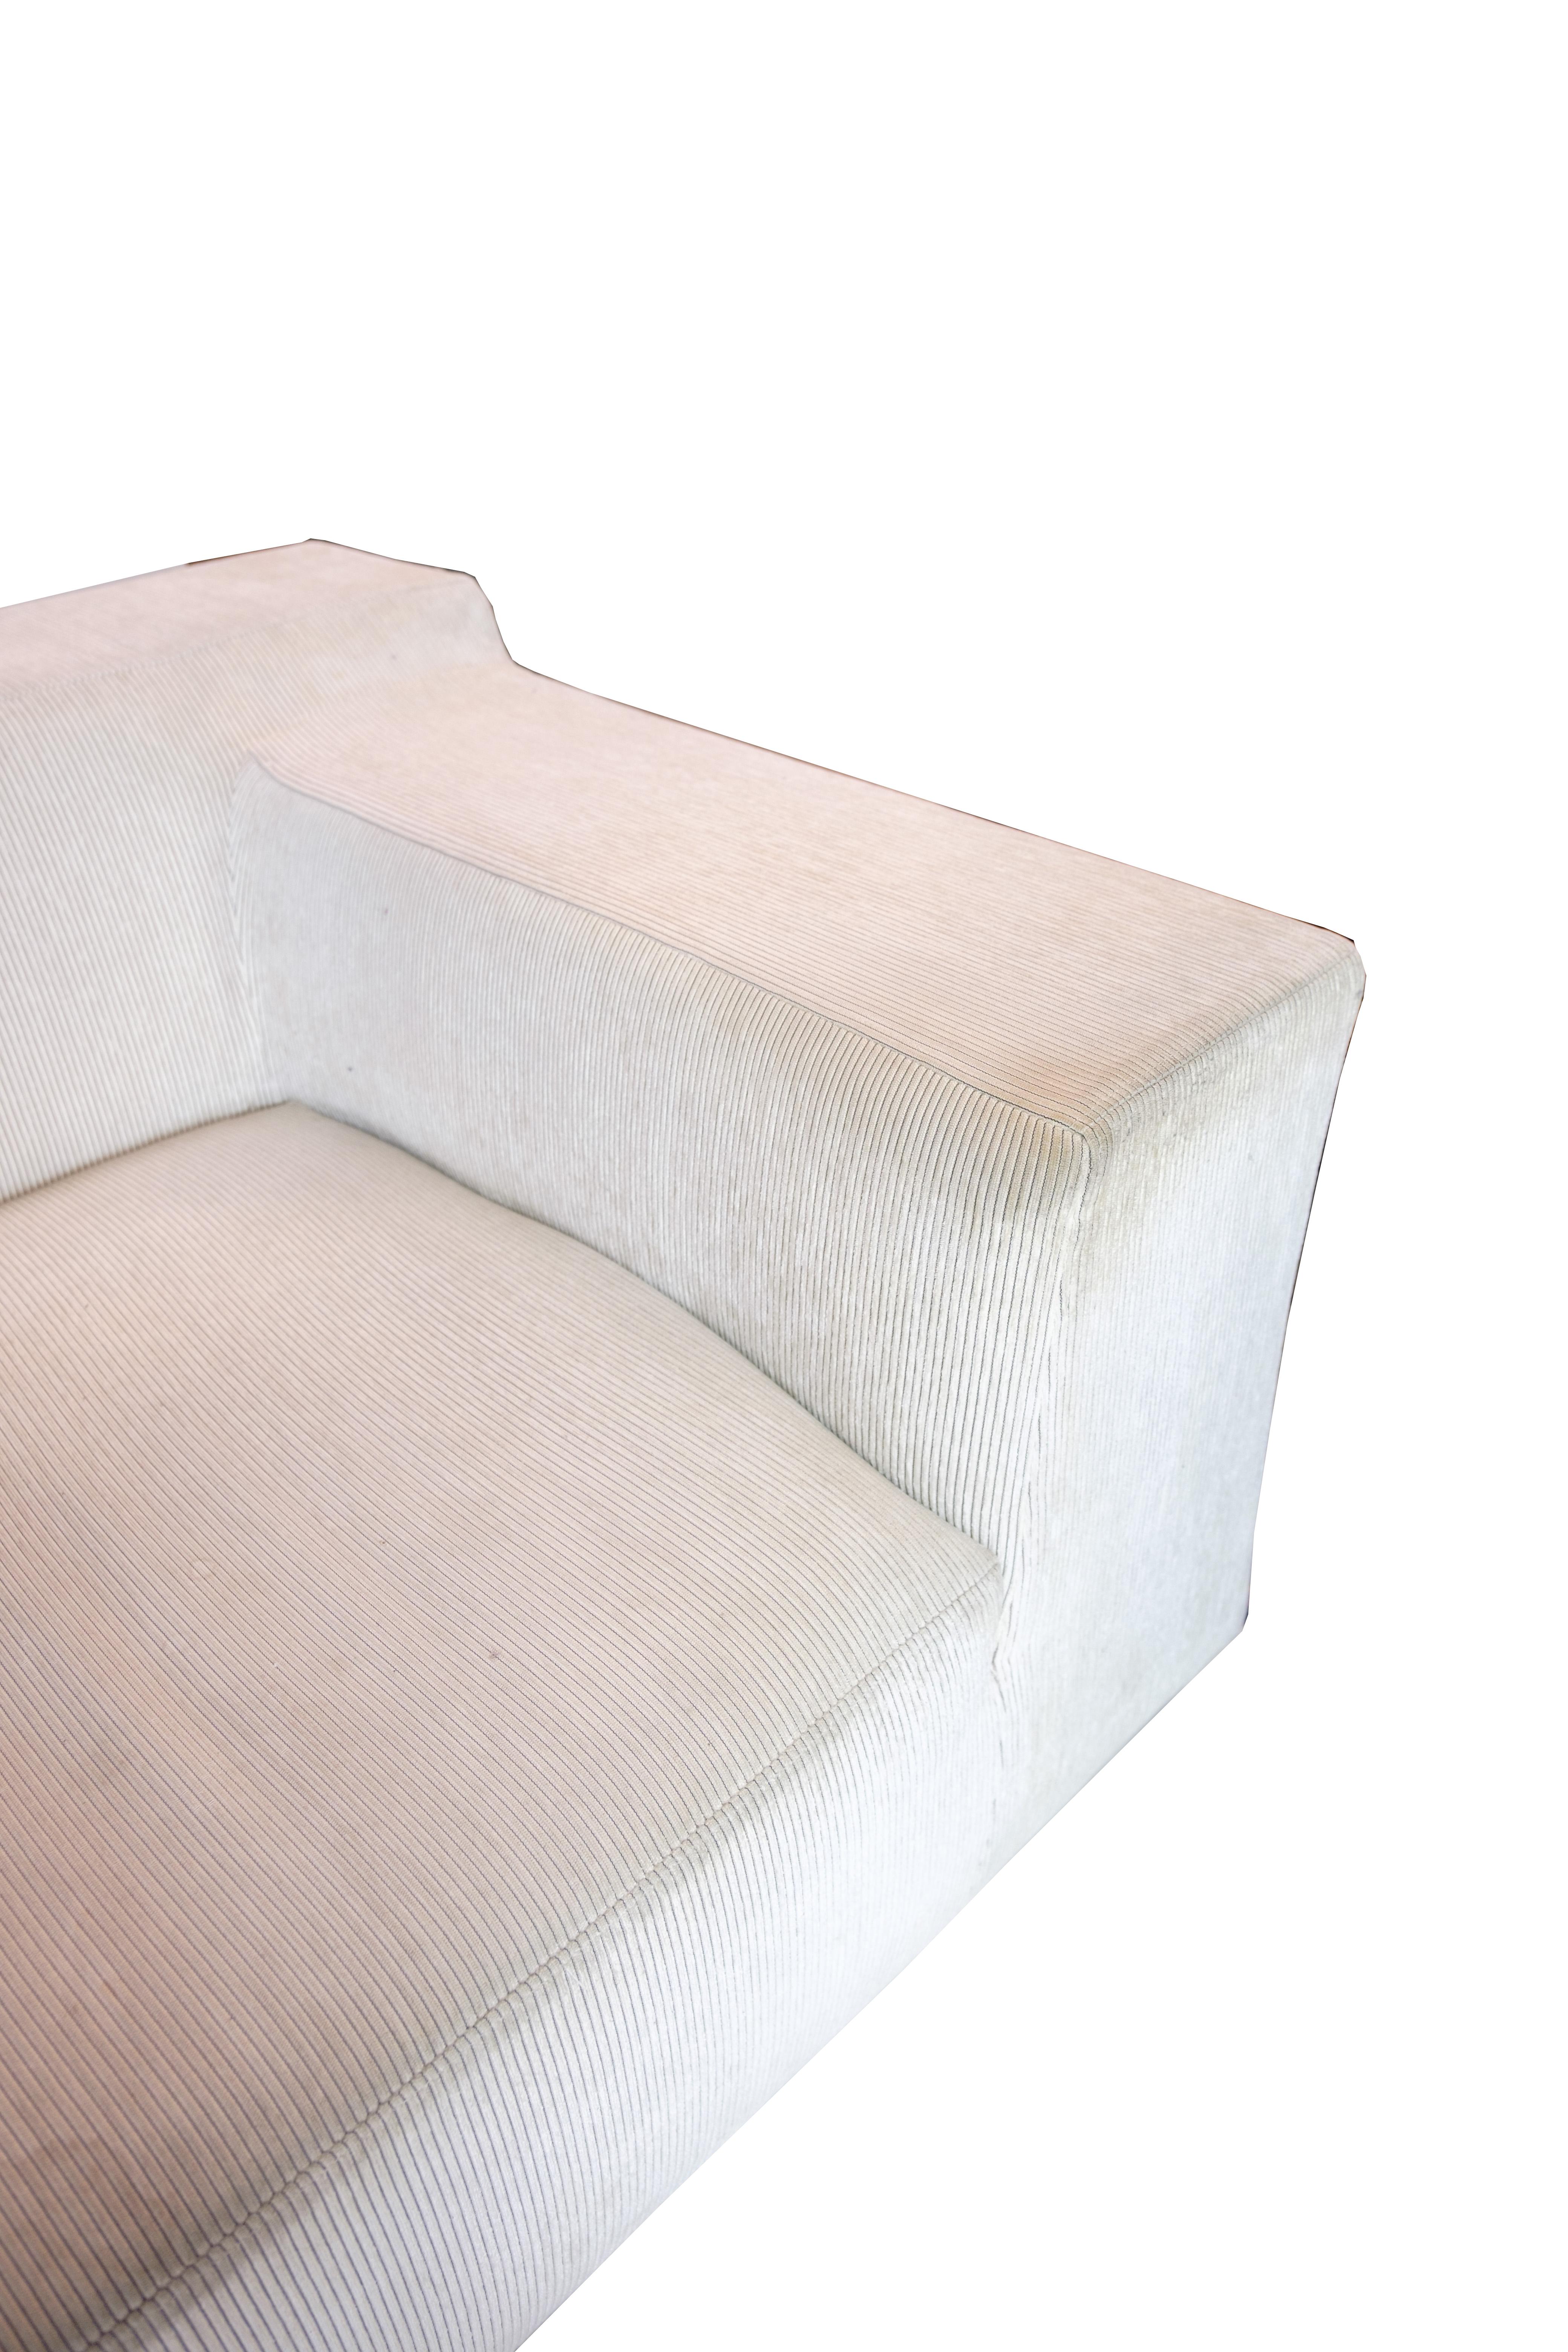 Scandinavian Modern Sofa, Model Baseline Designed by Jens Juul Eilersen For Sale 3